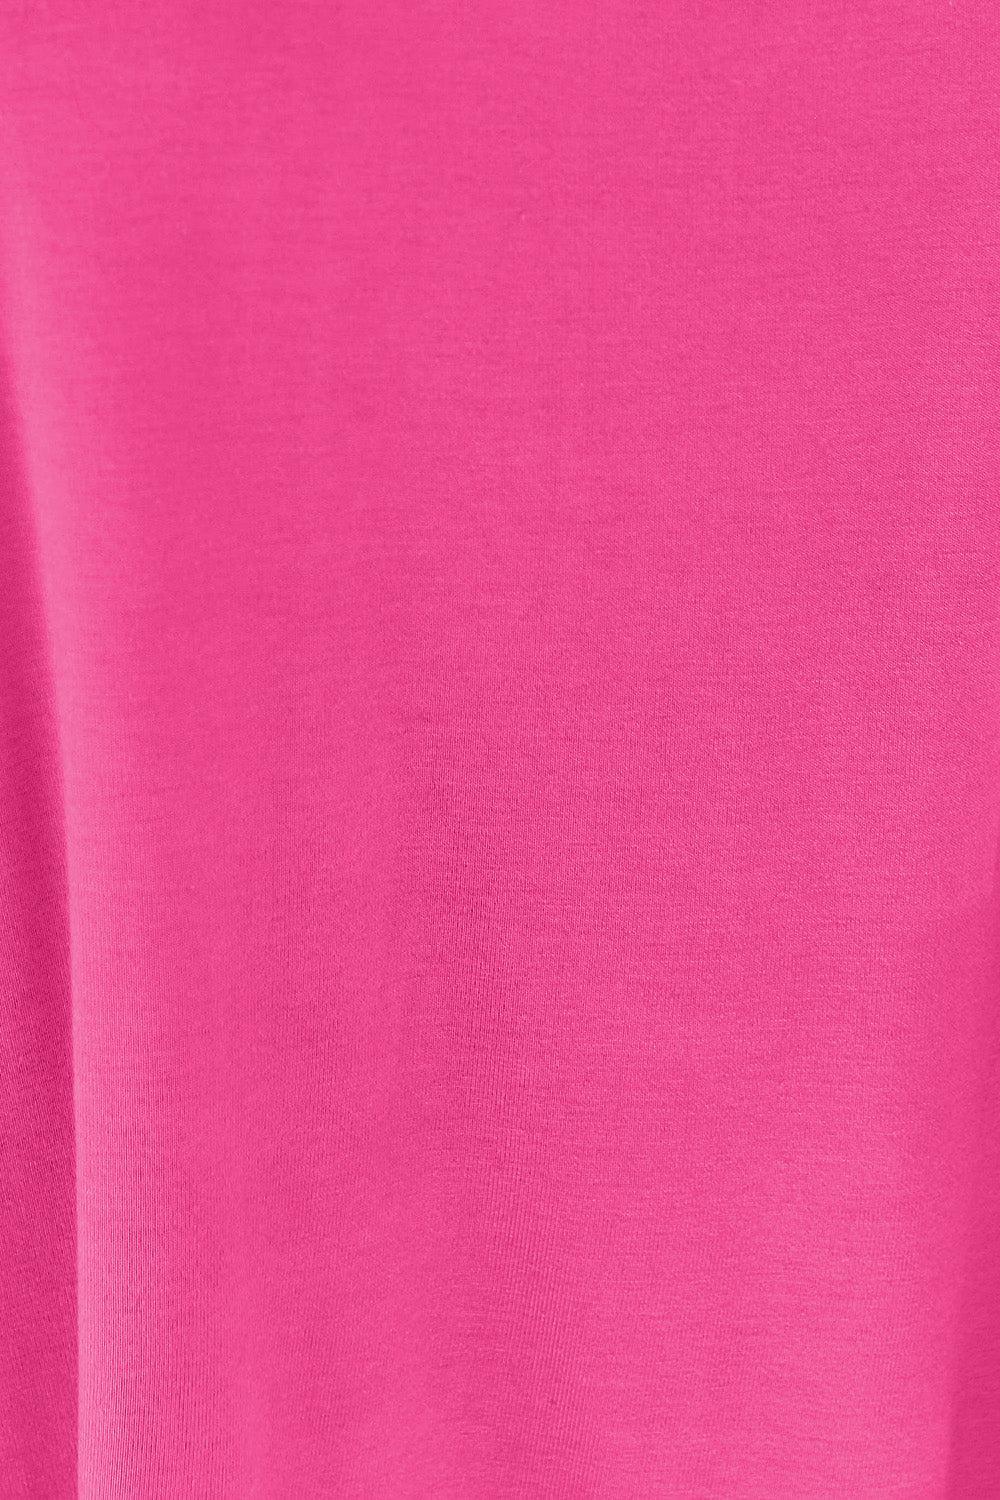 a close up of a pink t - shirt